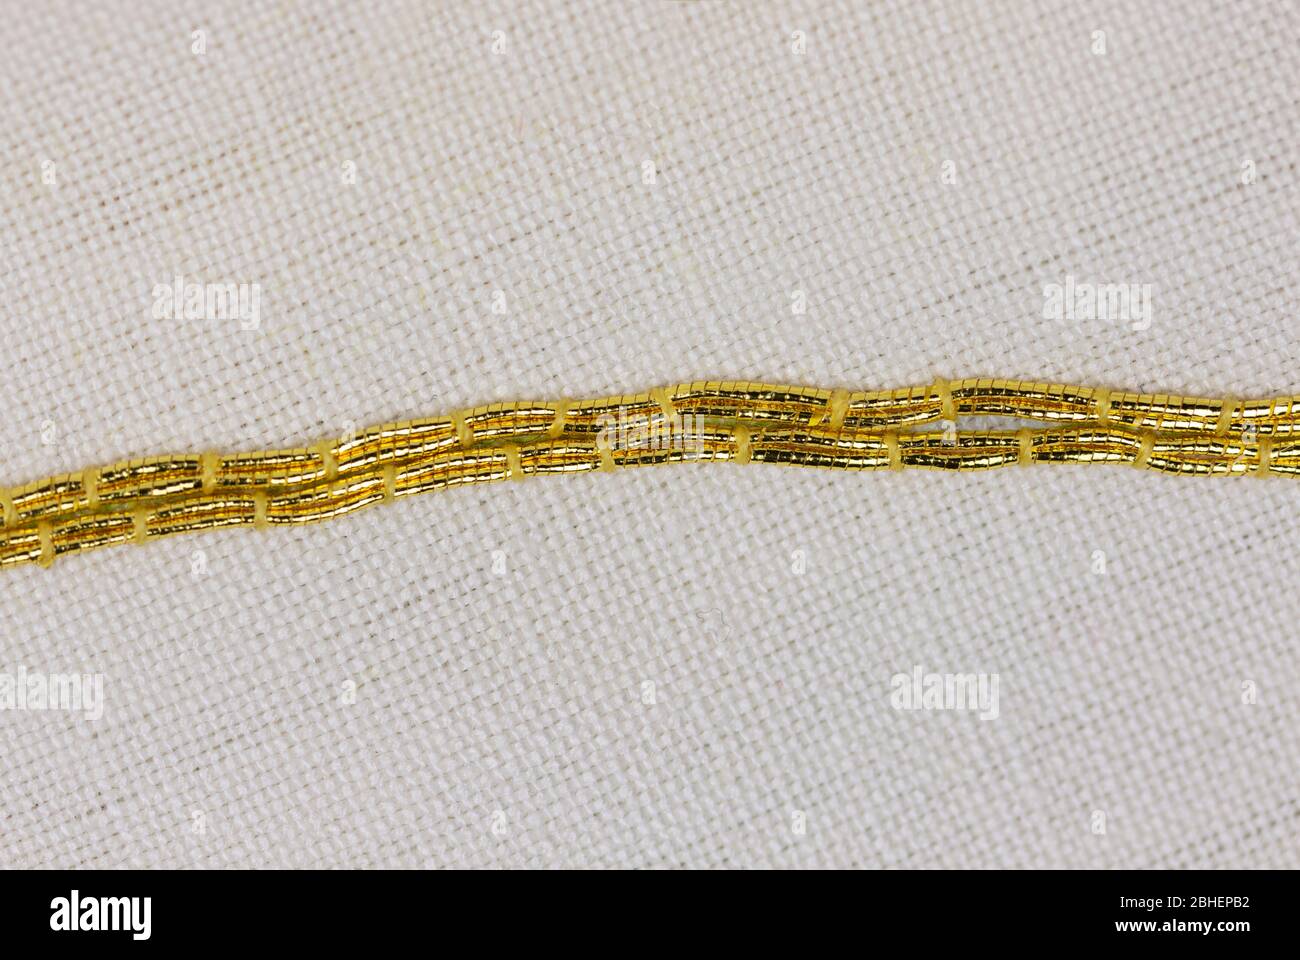 Goldwork Embroidery, Goldwork Threads, Goldwork Wires